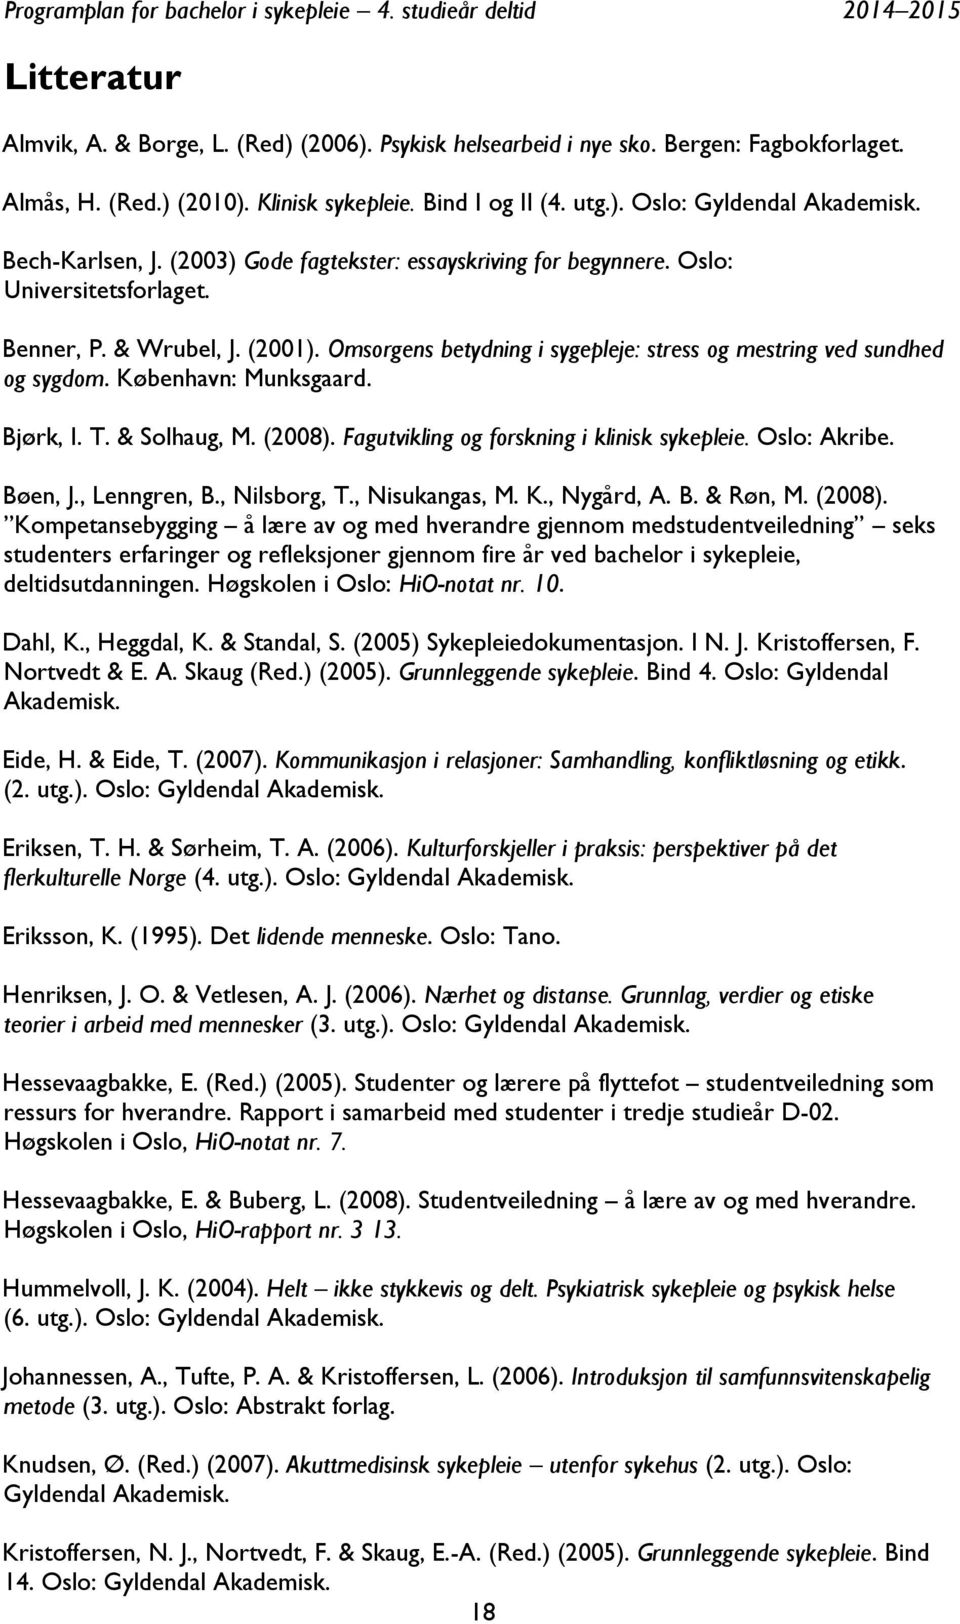 Omsorgens betydning i sygepleje: stress og mestring ved sundhed og sygdom. København: Munksgaard. Bjørk, I. T. & Solhaug, M. (2008). Fagutvikling og forskning i klinisk sykepleie. Oslo: Akribe.